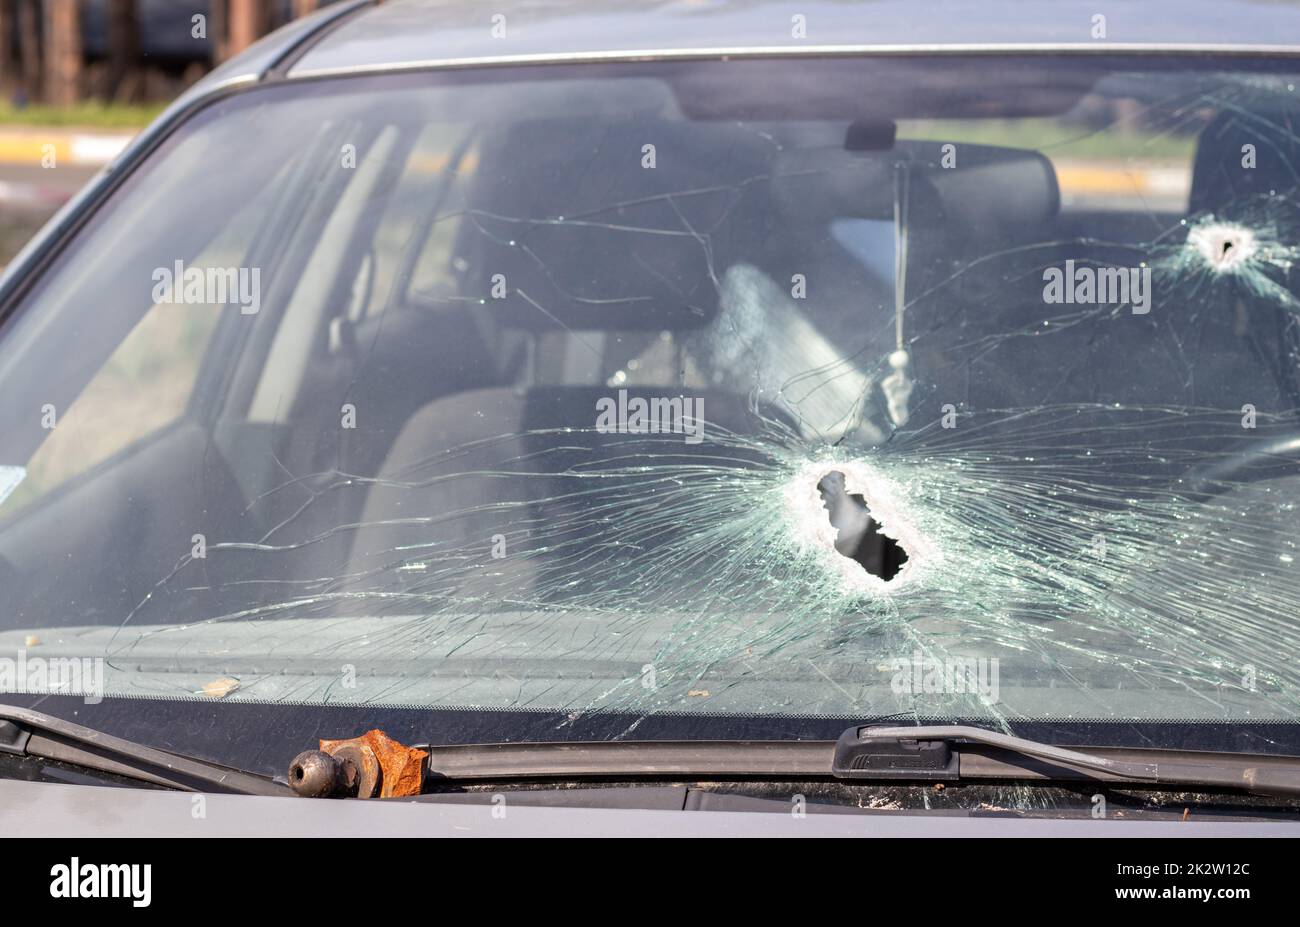 Löcher auf der Windschutzscheibe des Autos, es wurde von einer Waffe erschossen. Einschusslöcher. Zertrümmere die Windschutzscheibe, zerbrochenes und beschädigtes Auto. Die Kugel hat ein Loch im Glas zerbrochen. Stockfoto